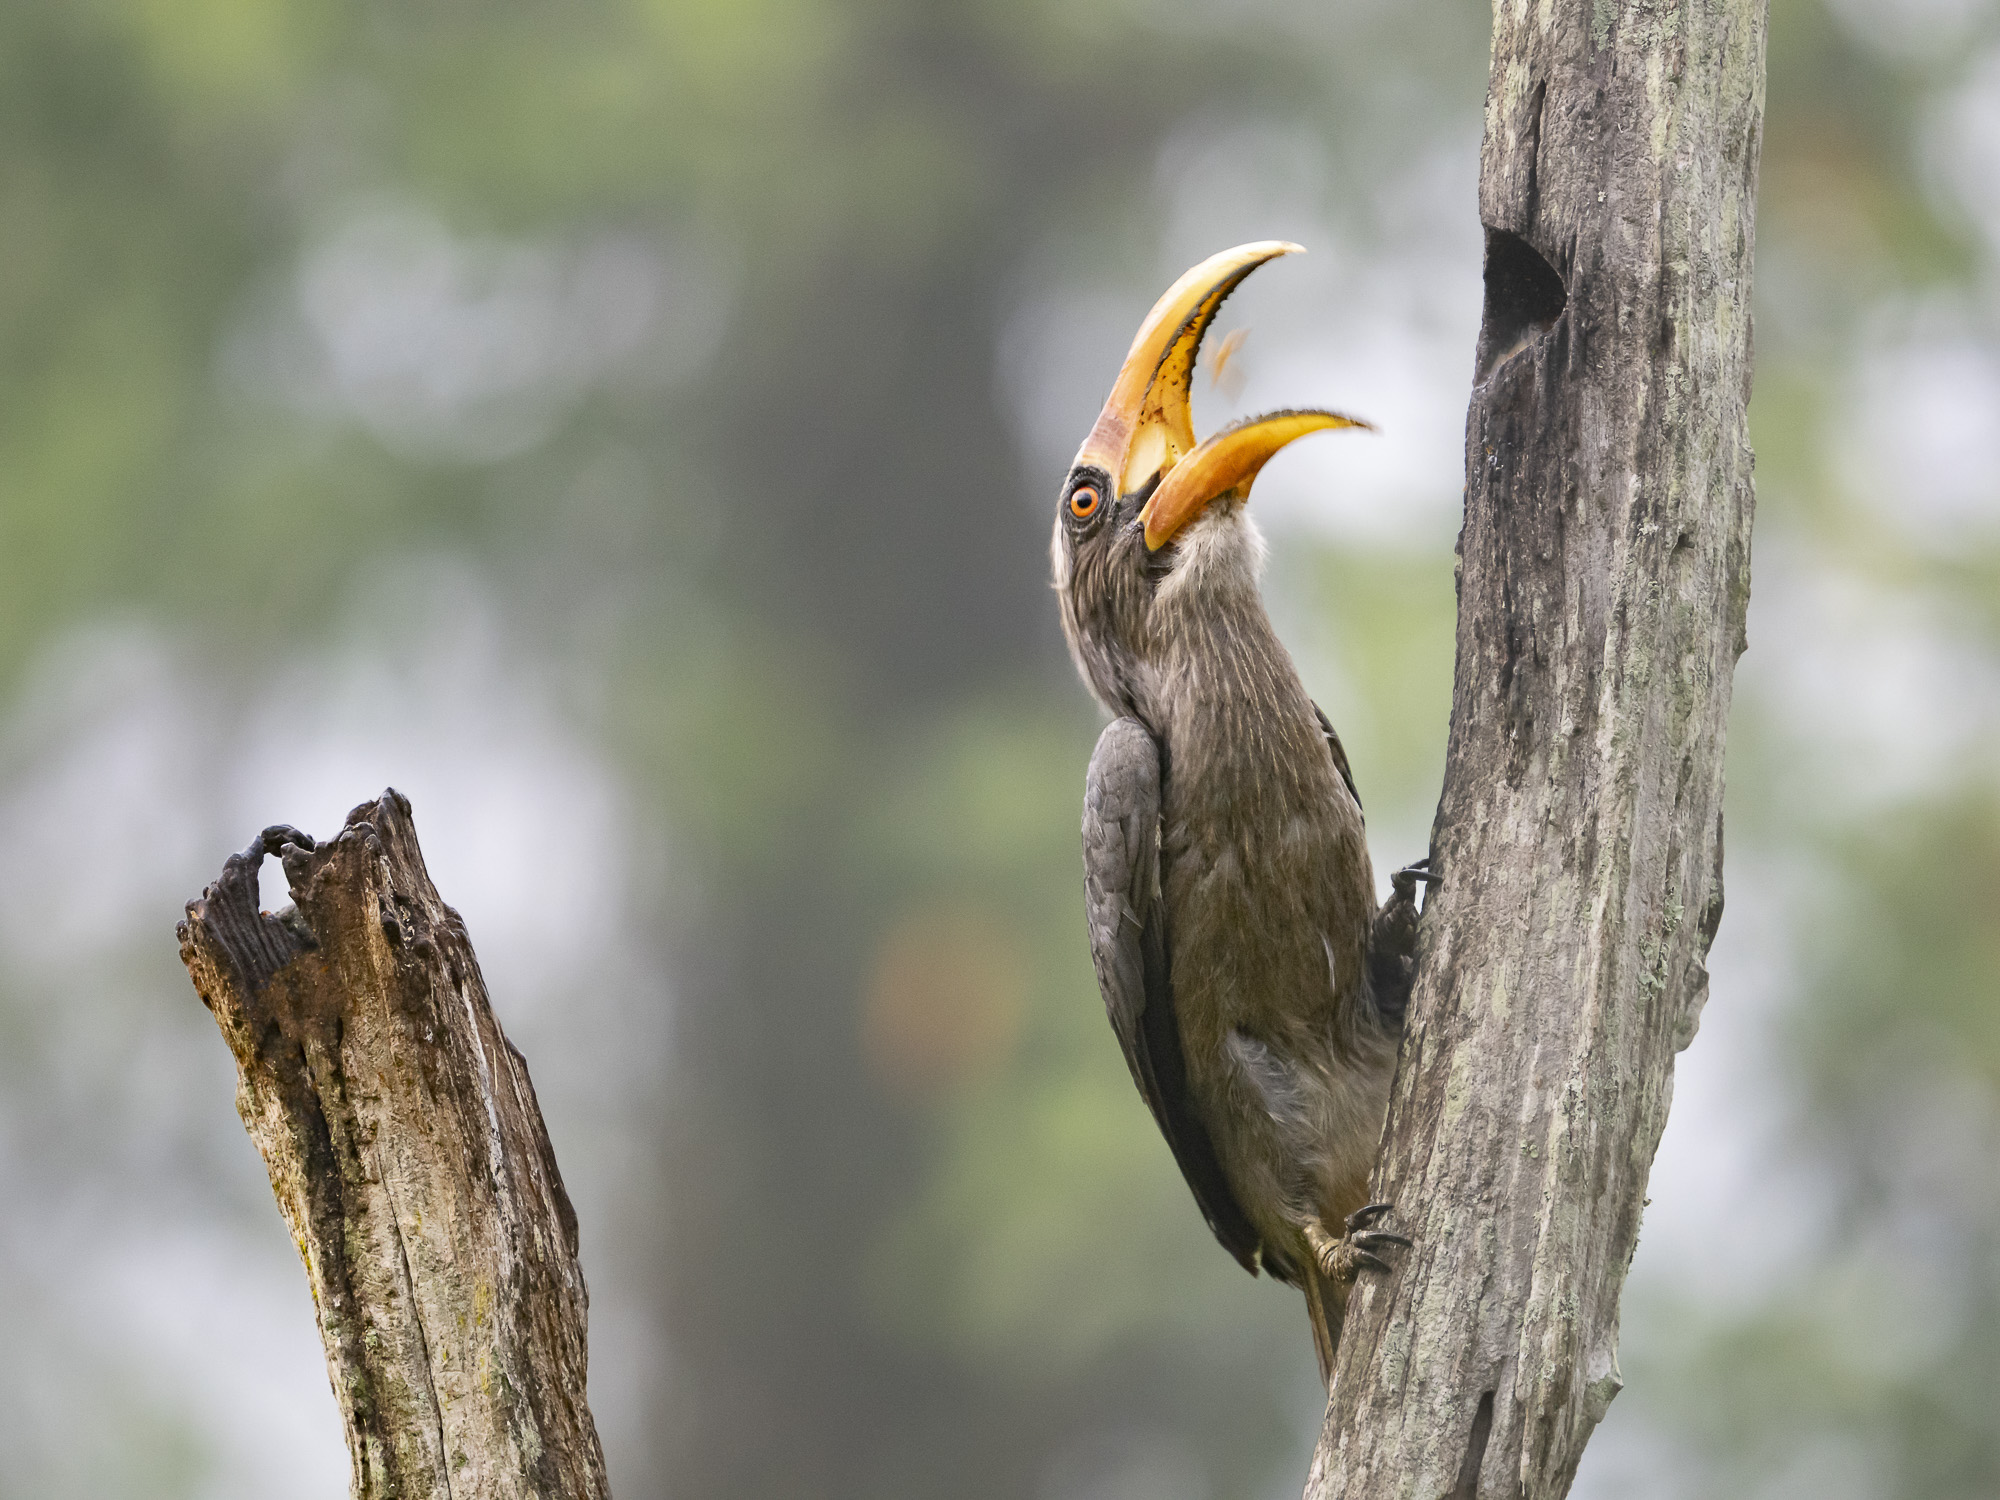 Malabar hornbill fotograferad på fotoresa med Wild Nature fotoresor till Sydindien